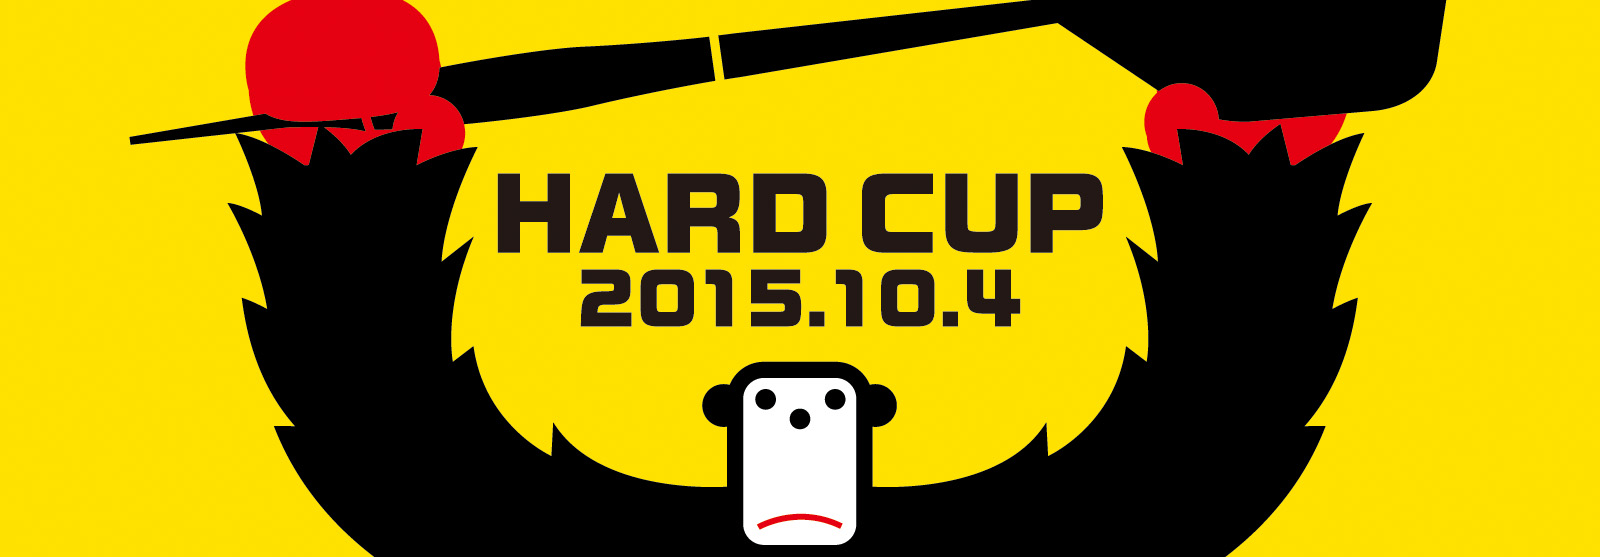 HARD CUP ハードカップ 2015年10月4日(日) 晴海客船ターミナル(4Fホール)